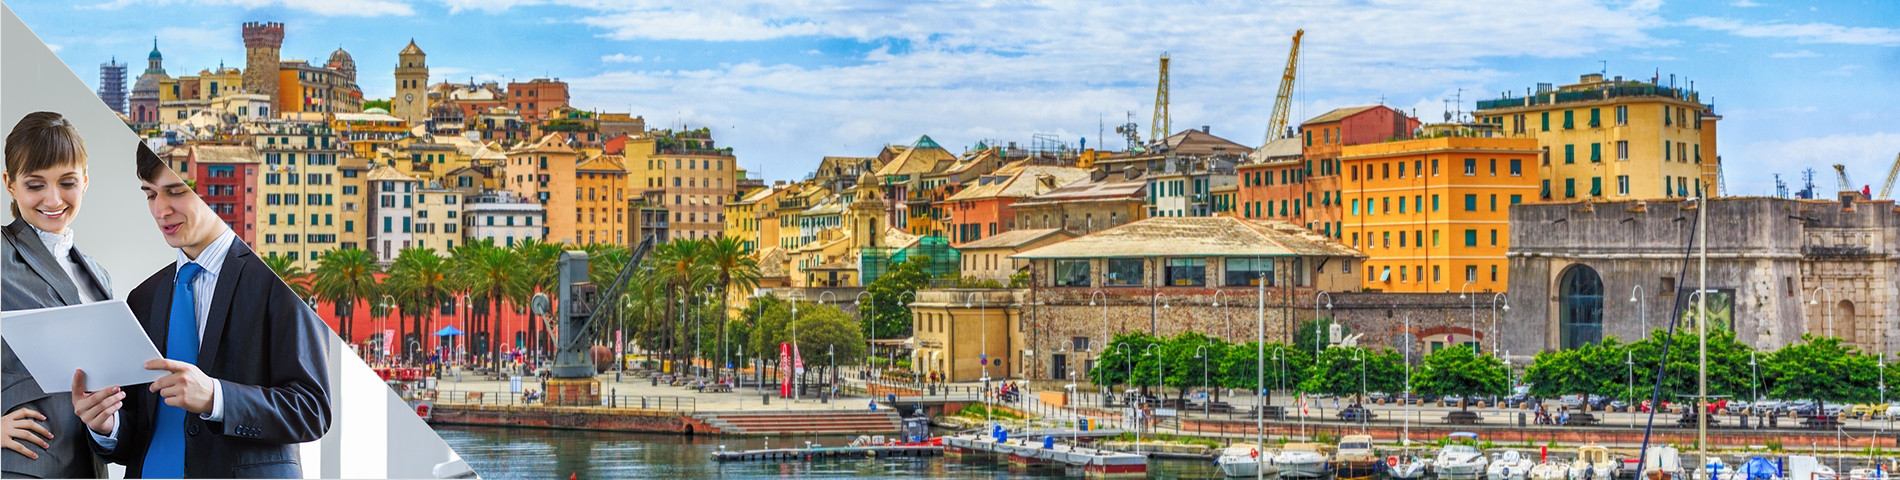 Genova - Egyéni üzleti